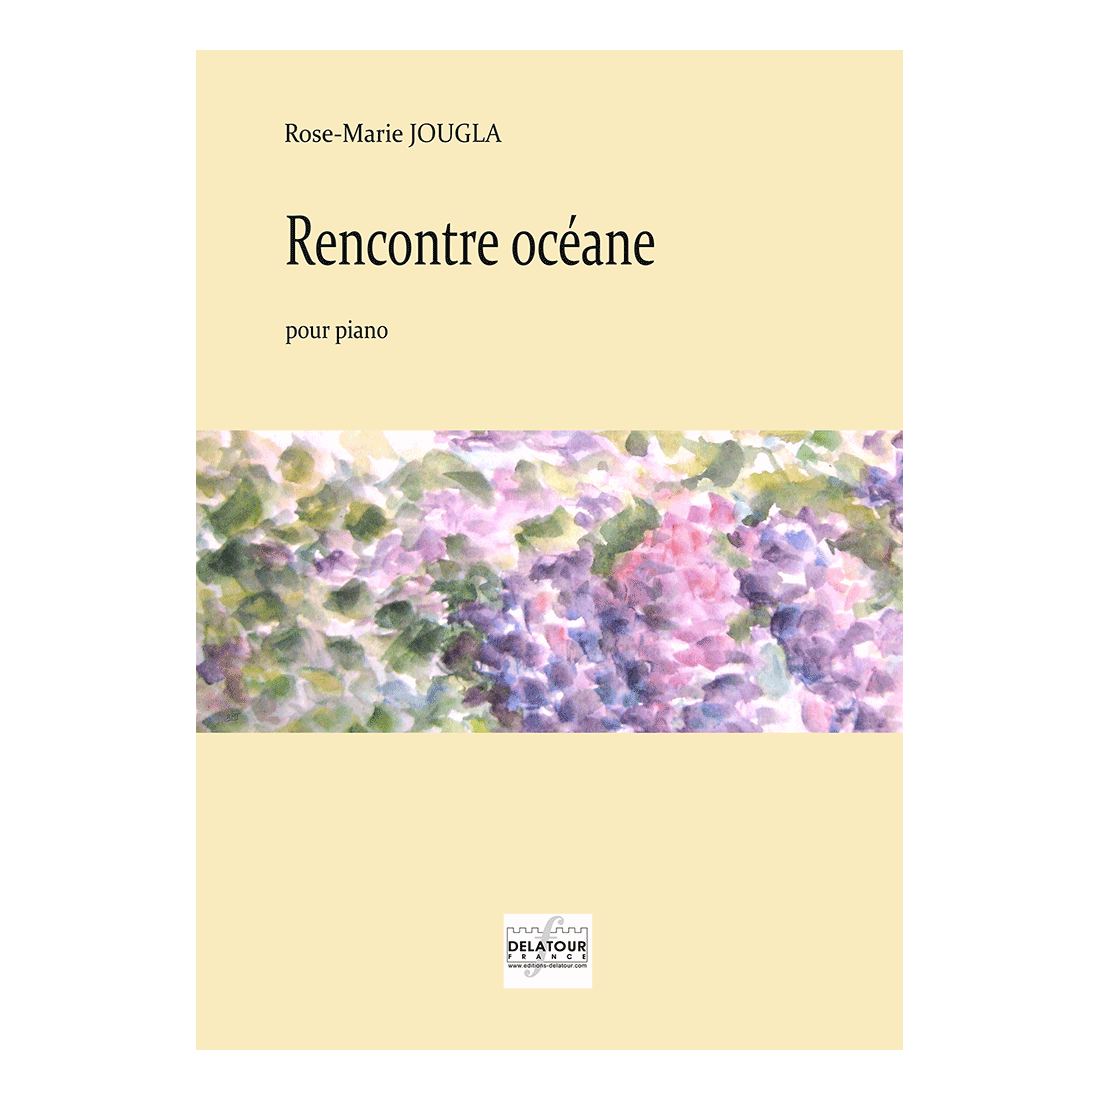 Rencontre océane for piano